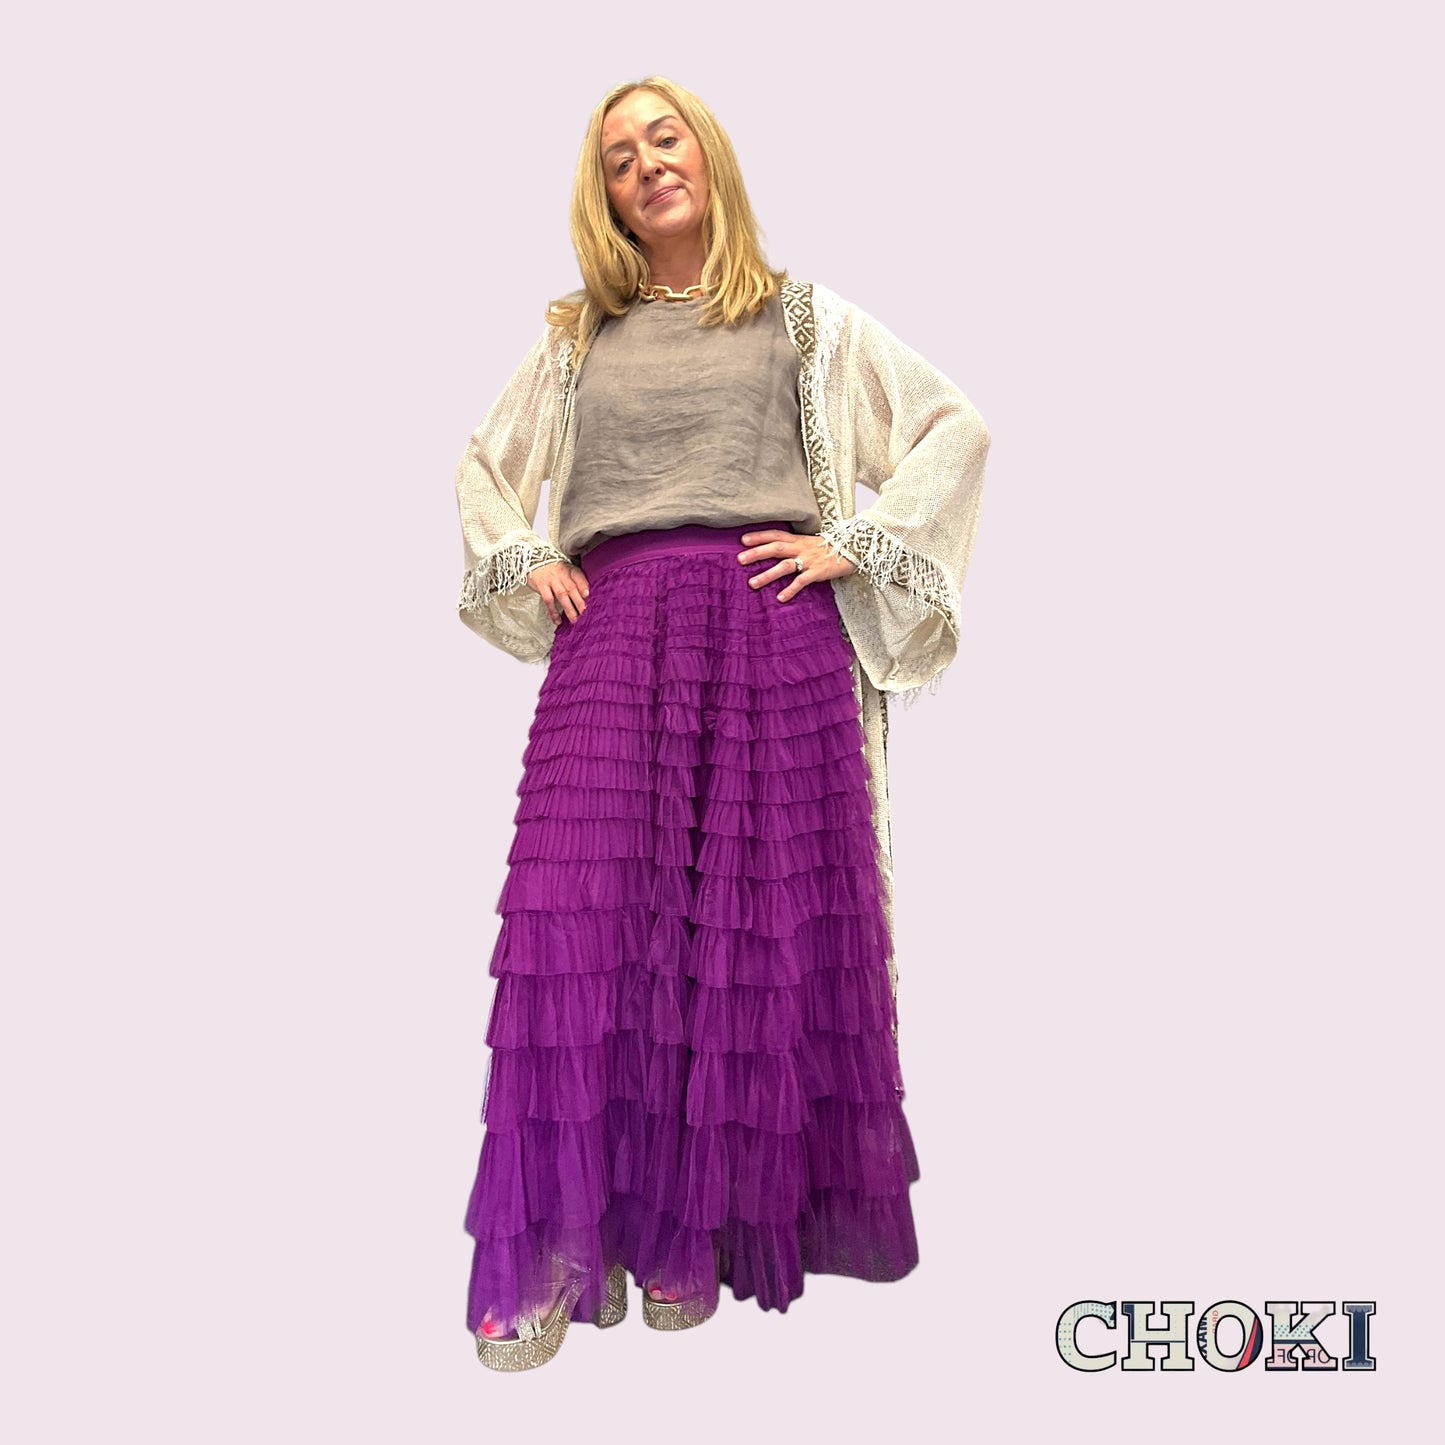 Cosmo Skirt